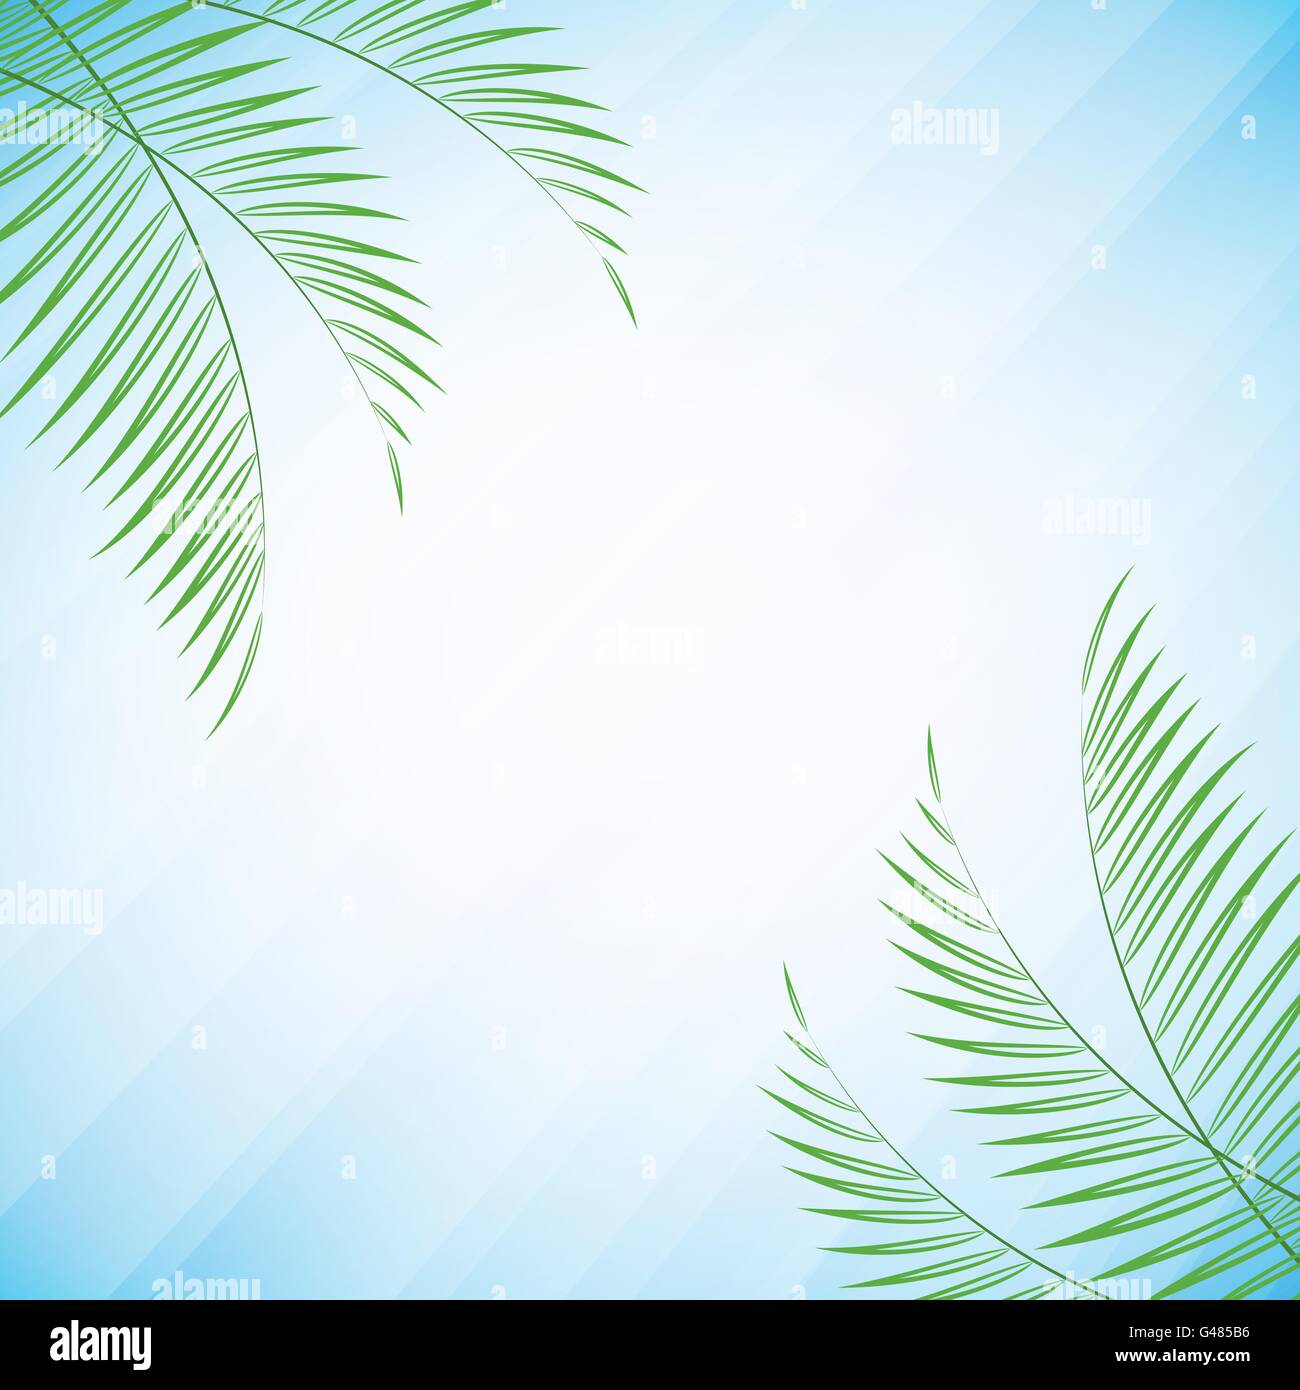 Vektor-Illustration der Palme Blätter über sommerlich leichte blaue Hintergrund für Ihr design Stock Vektor